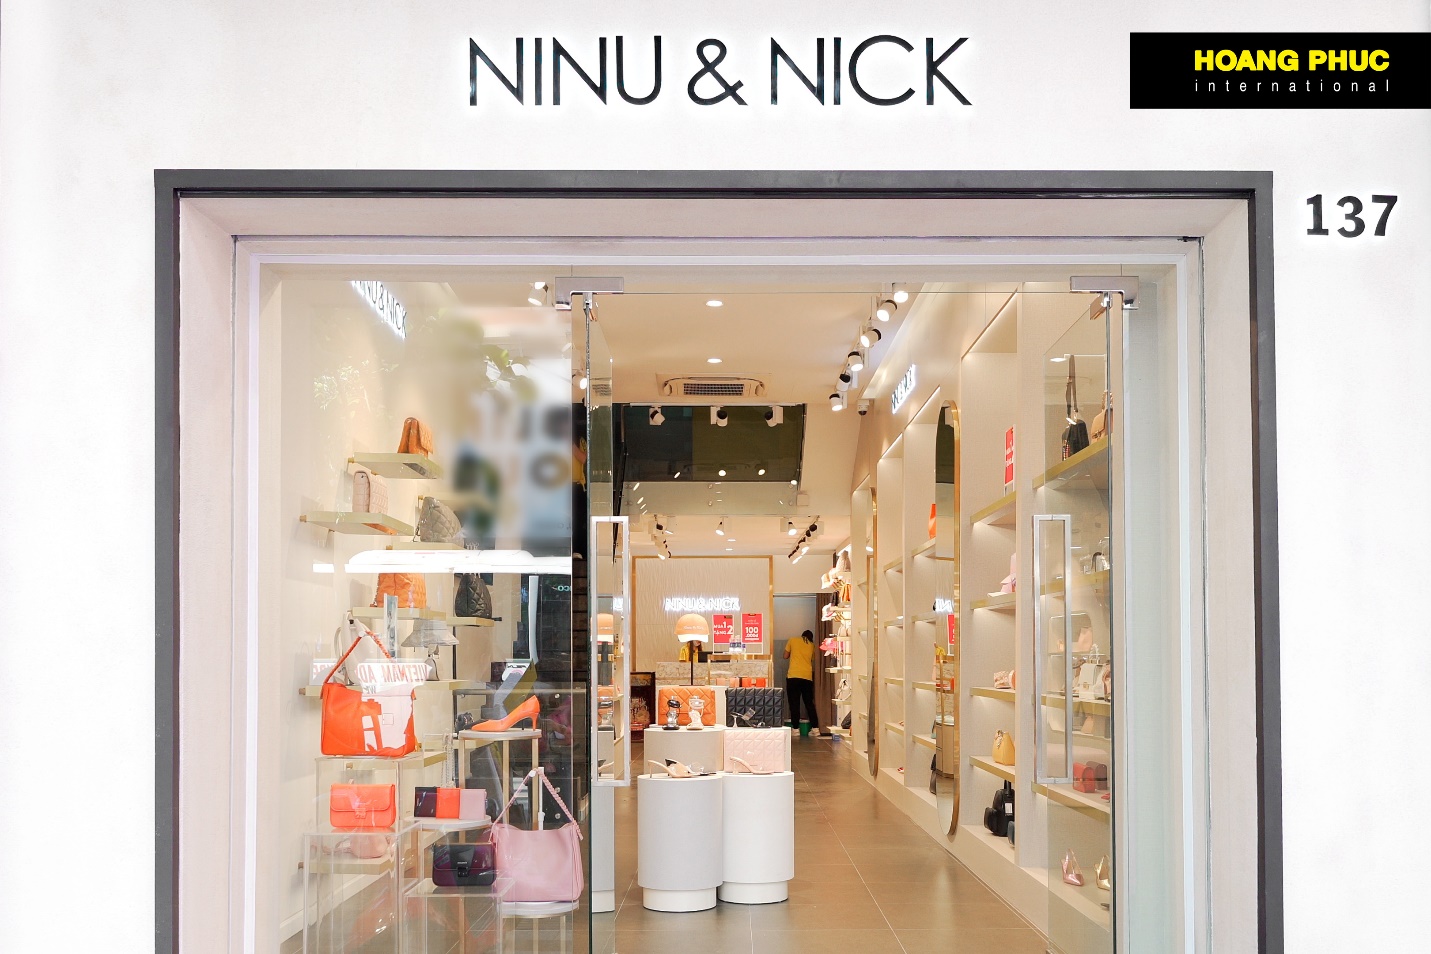 HOANG PHUC International khai trương cửa hàng NINU&NICK đầu tiên tại Việt Nam - Ảnh 5.